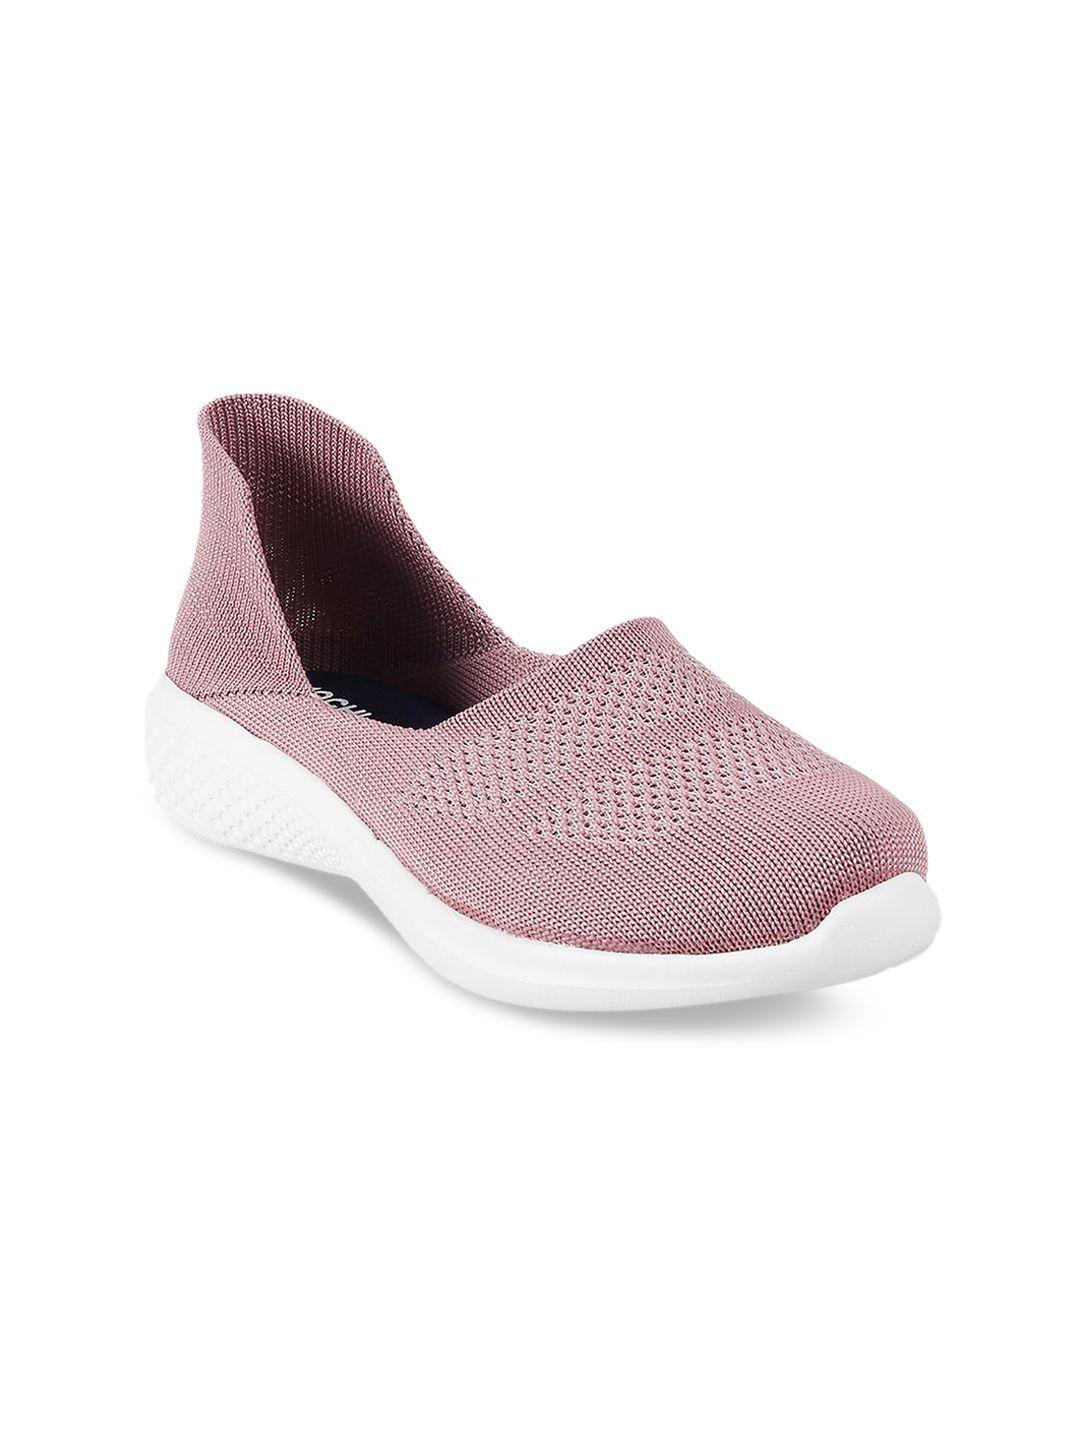 mochi women pink woven design slip-on sneakers